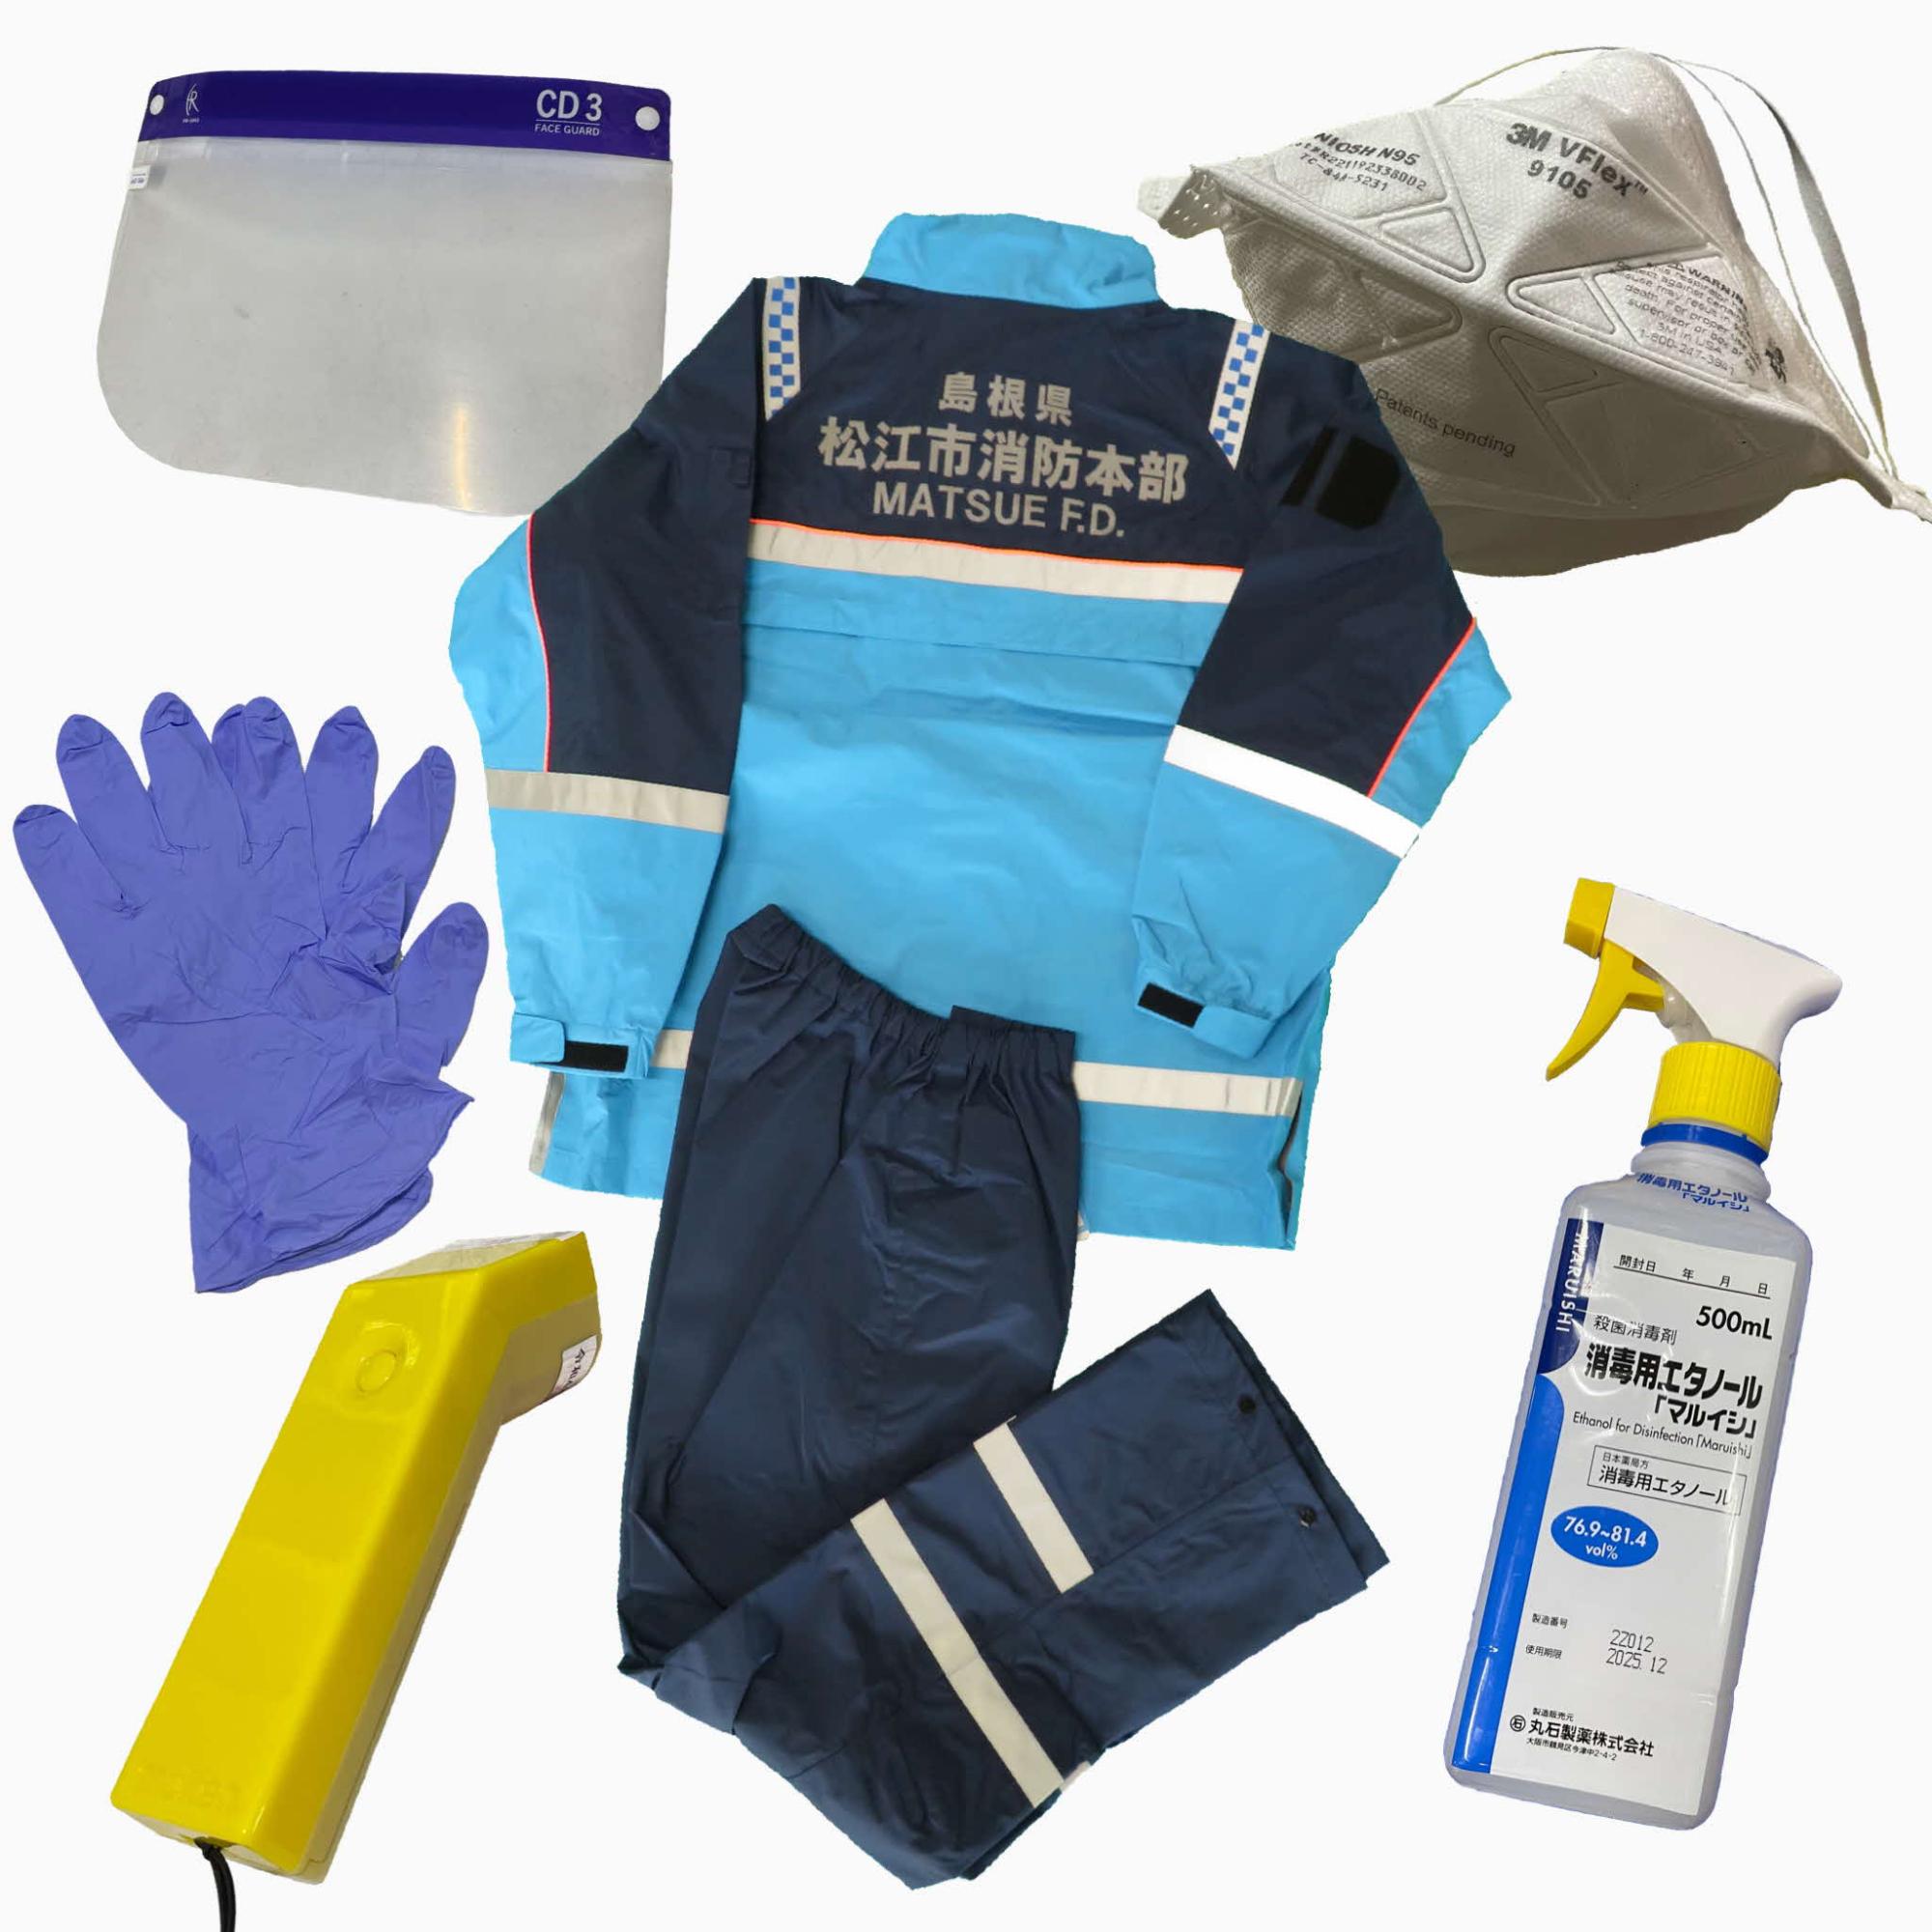 感染対策用資器材及び資器材洗浄・消毒用消耗品（マスク、手袋、フェイスシールド等）